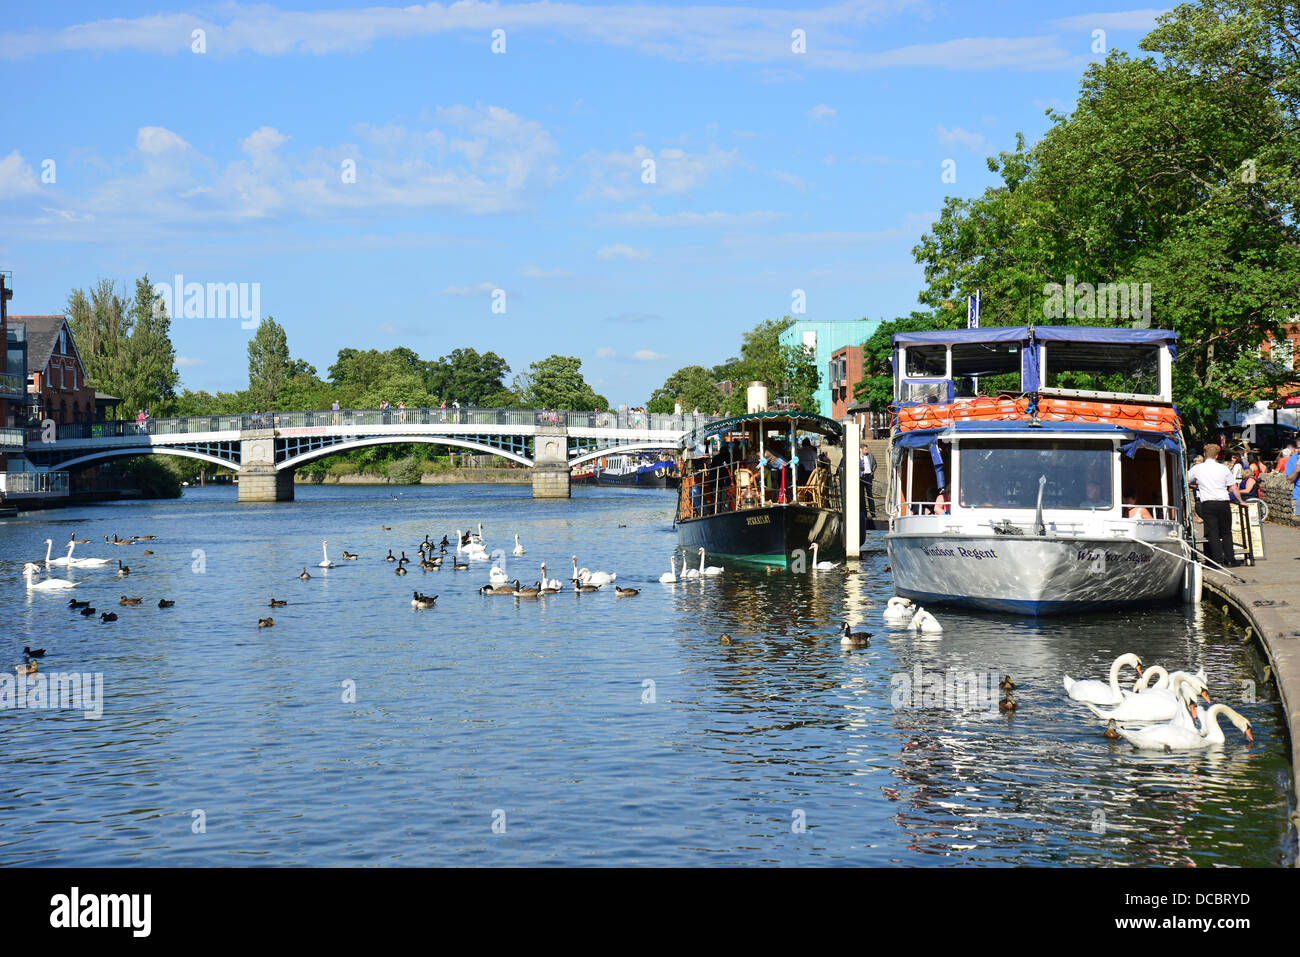 Les bateaux de croisière sur la rivière Tamise, Windsor, Berkshire, Angleterre, Royaume-Uni Banque D'Images